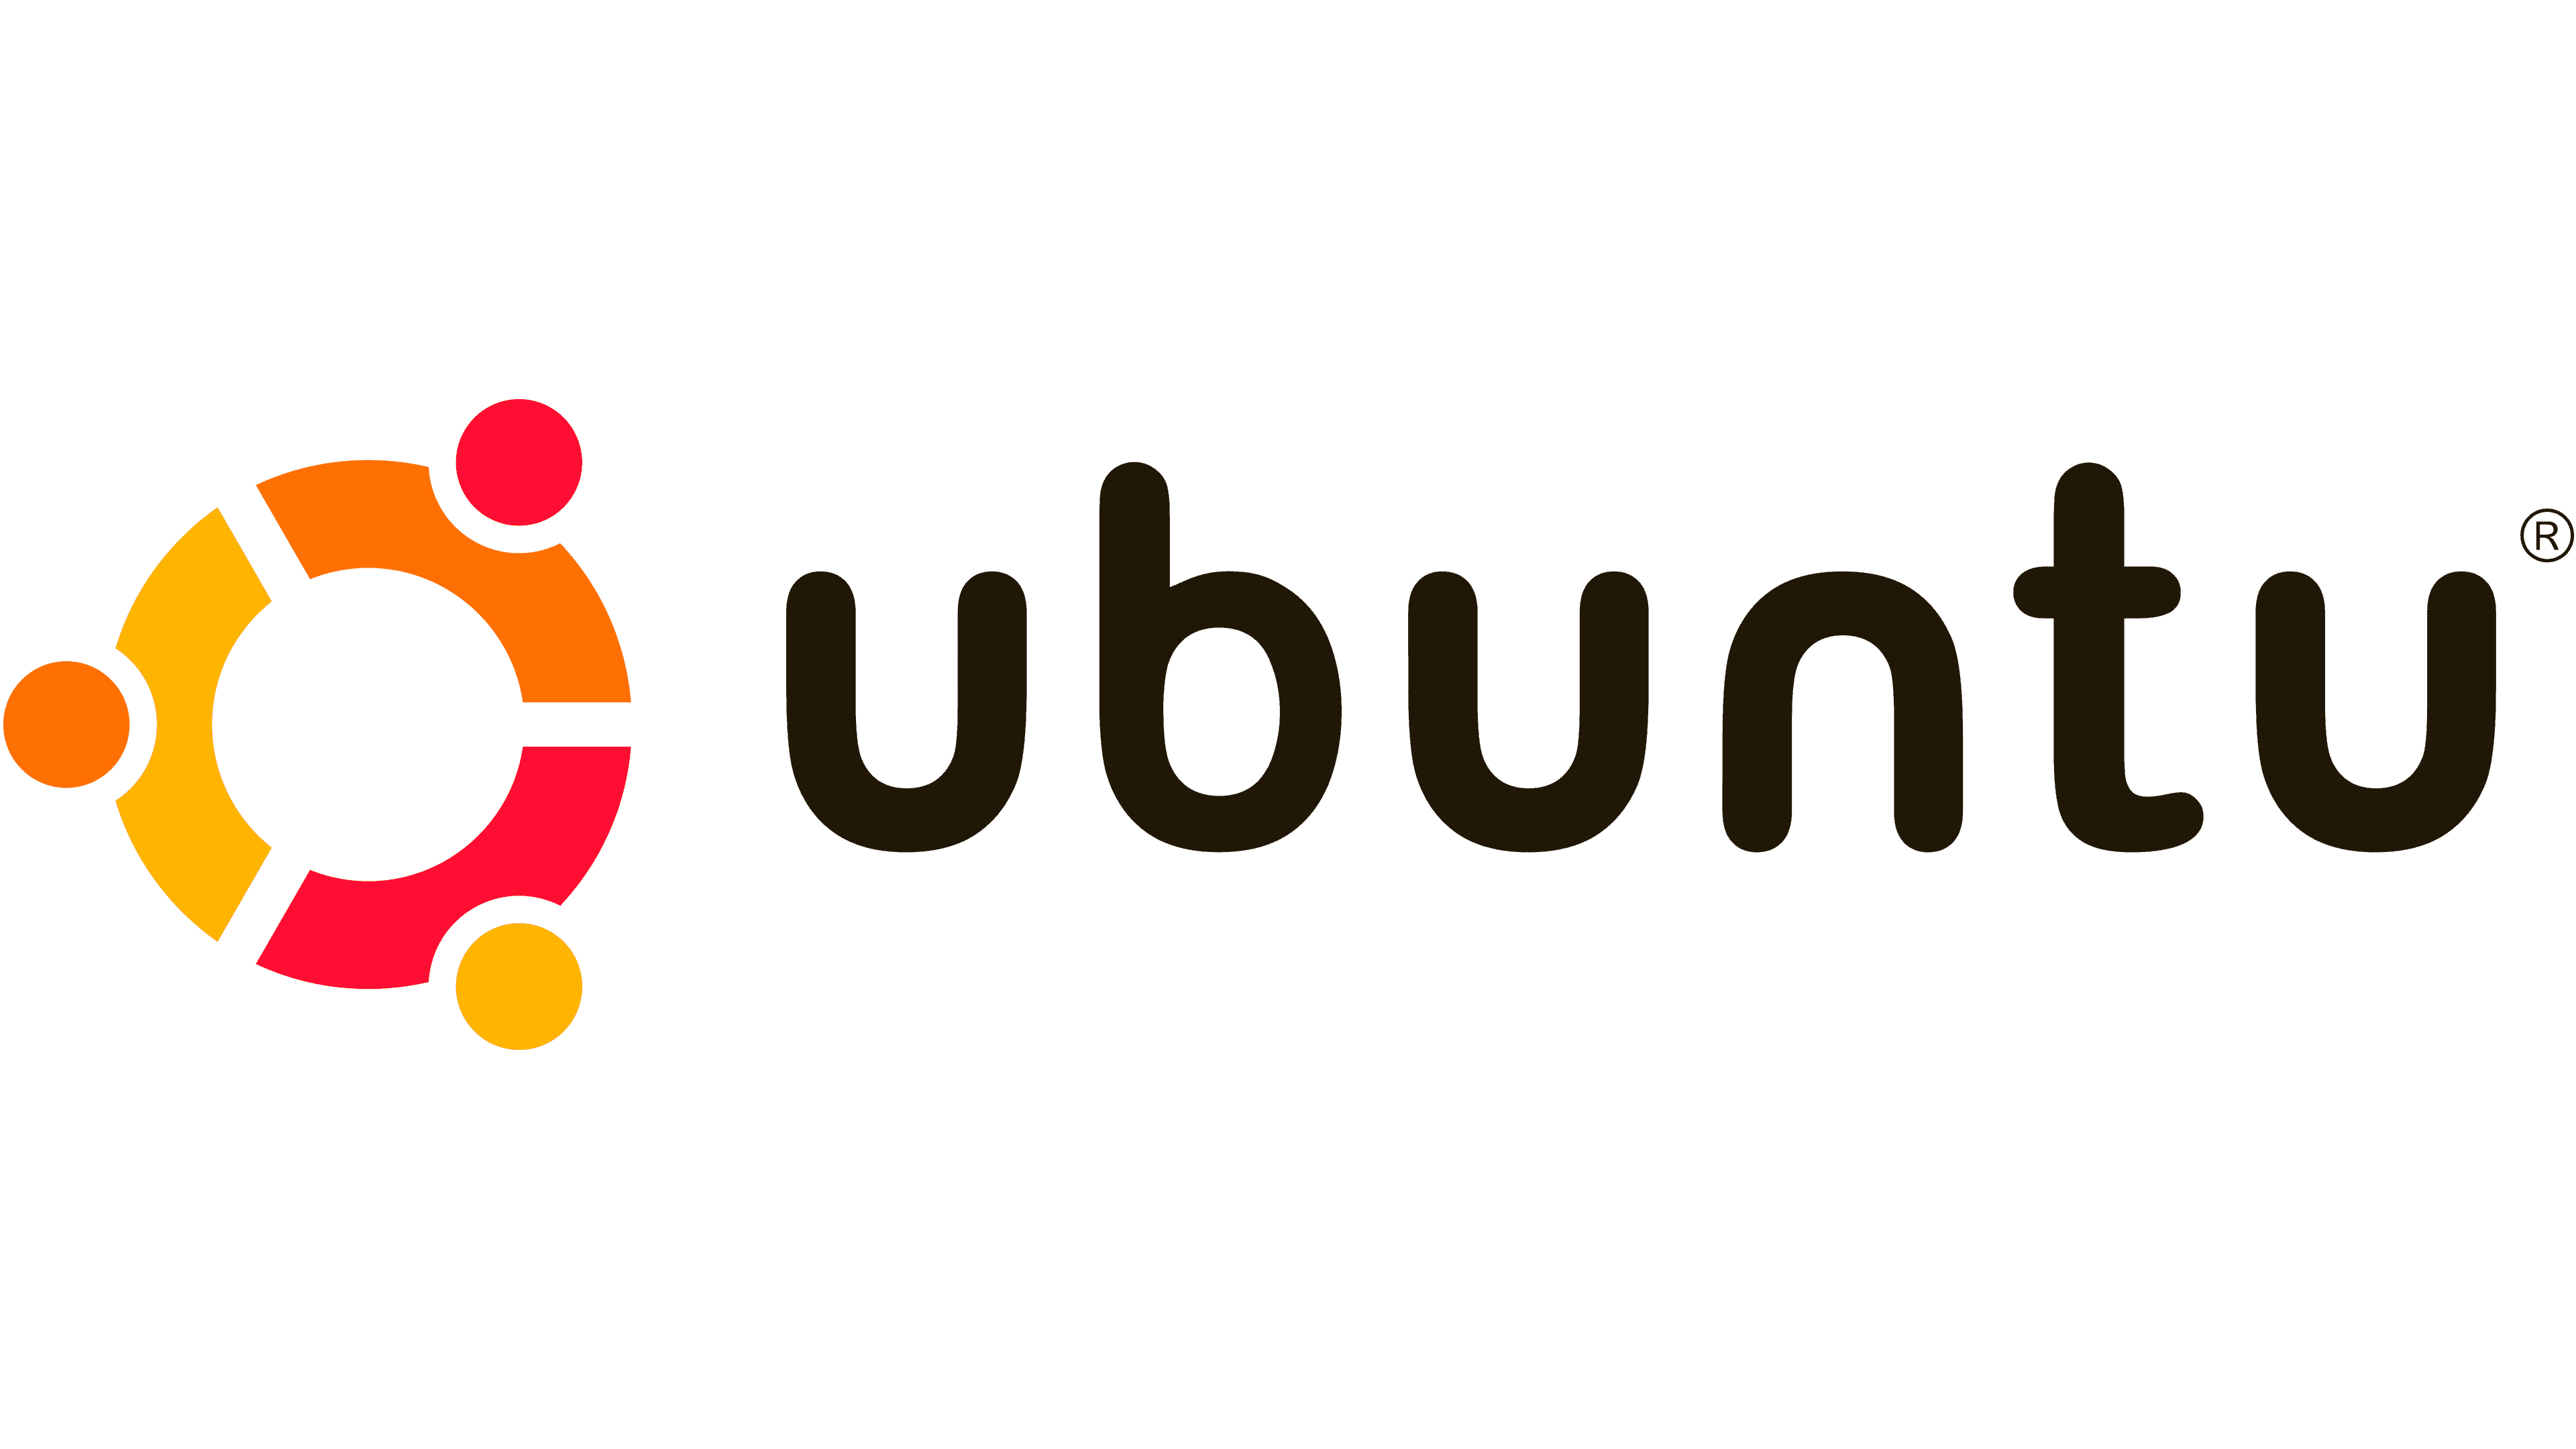 Ubuntu-Logo-PNG-Photo-Image.png